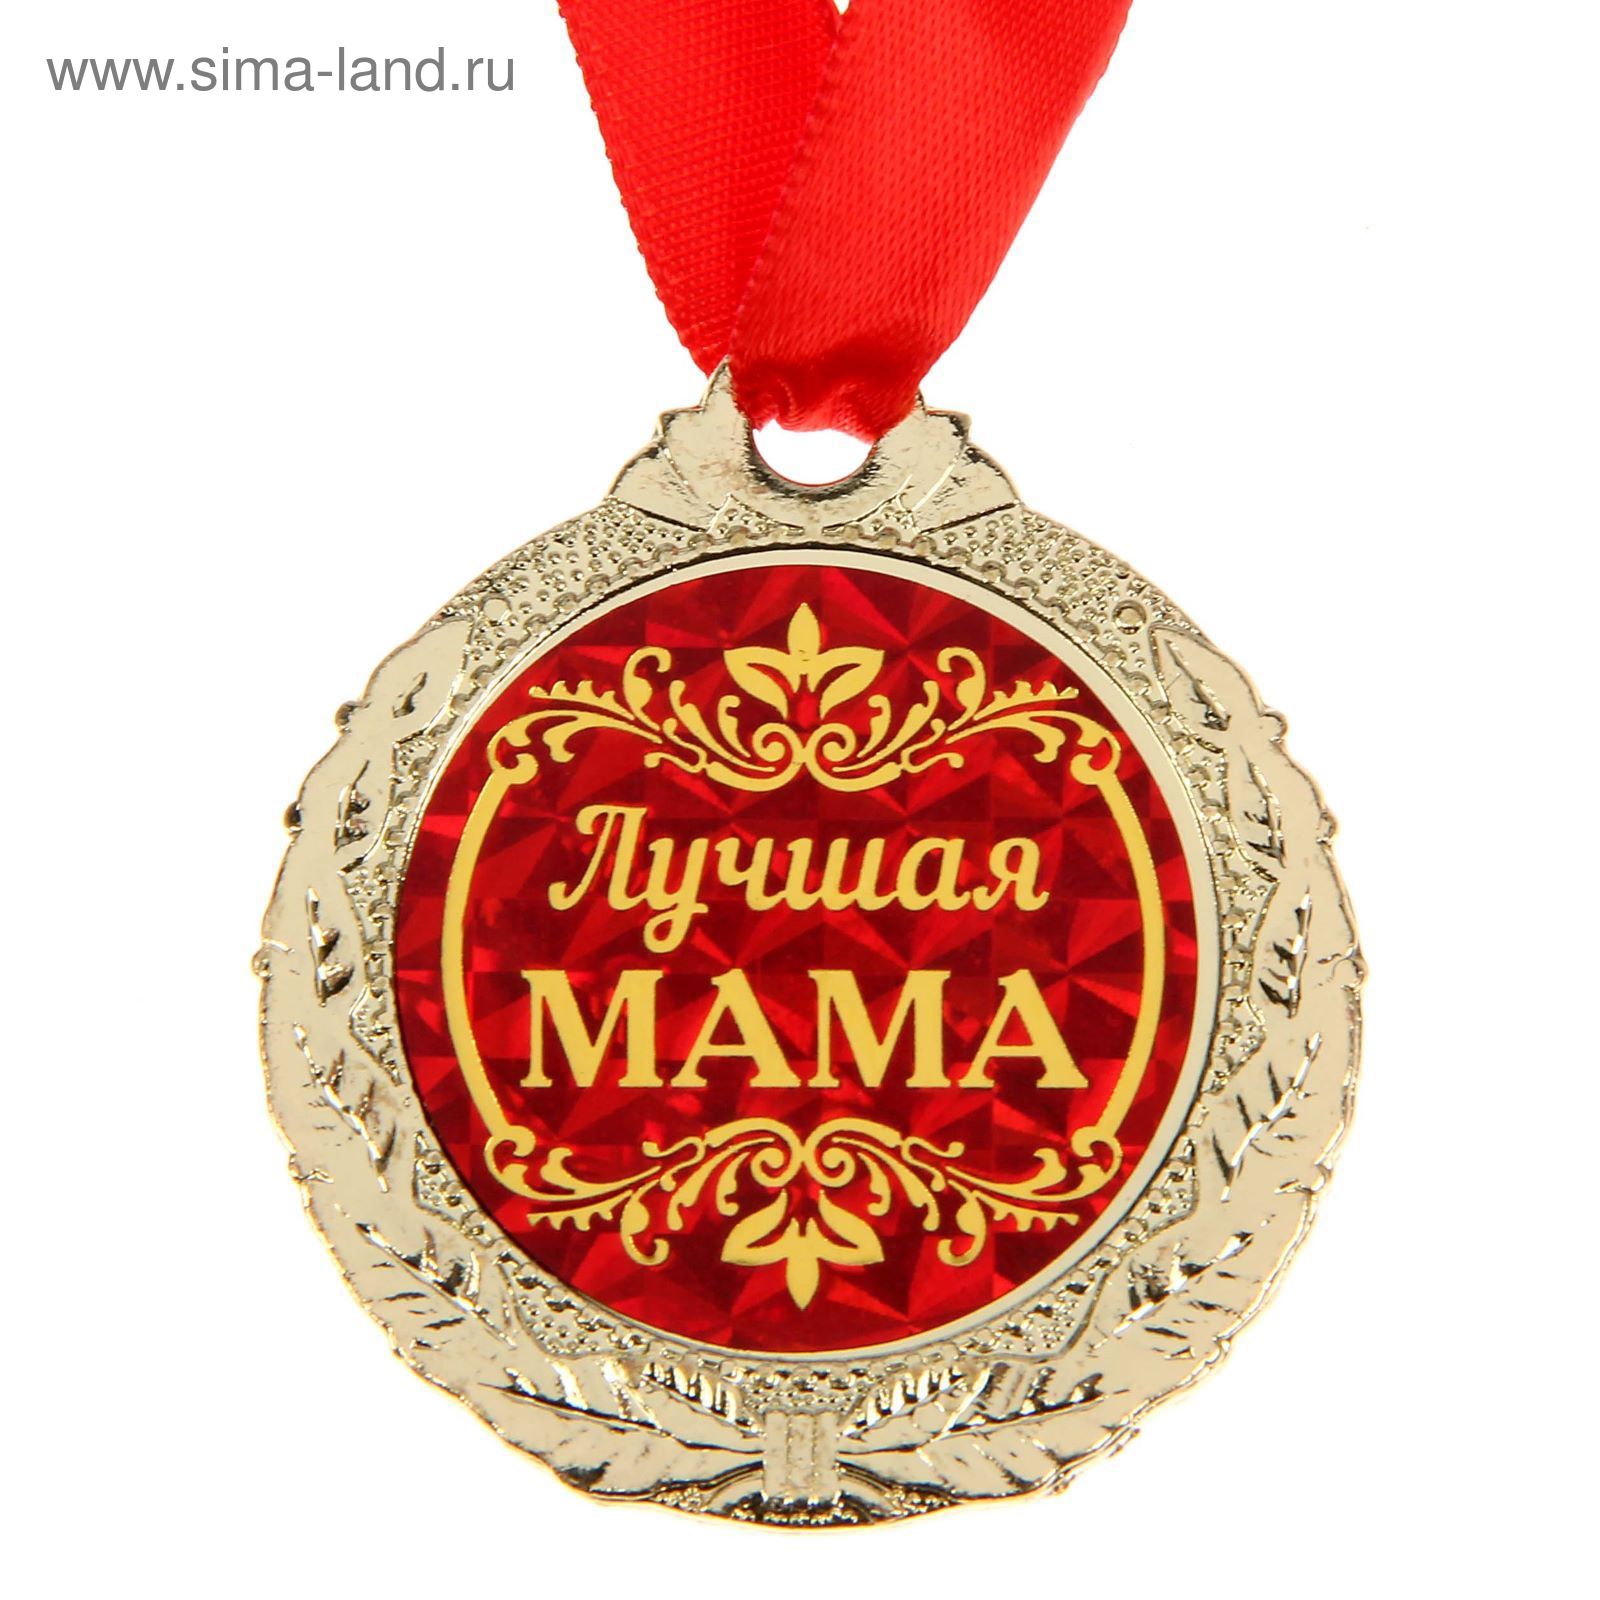 Ищу лучшую маму. Медаль маме. Медаль лучшая мама. Сувенирные медали. Медальки лучшая мама.